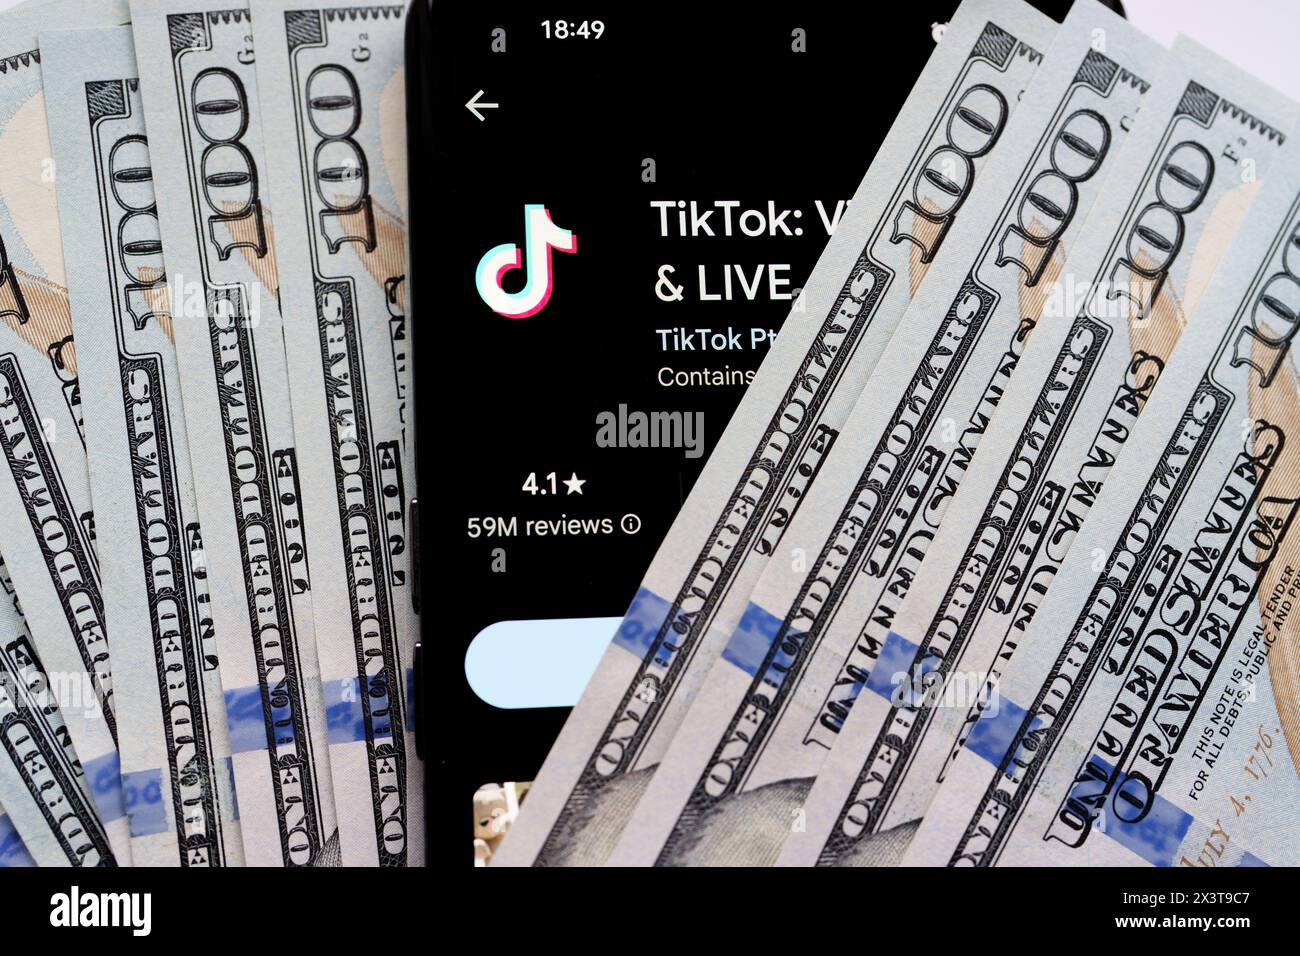 Application TikTok vu sur l'écran du smartphone qui est placé sur des dollars américains. Stafford, Royaume-Uni, 28 avril 2024 Banque D'Images